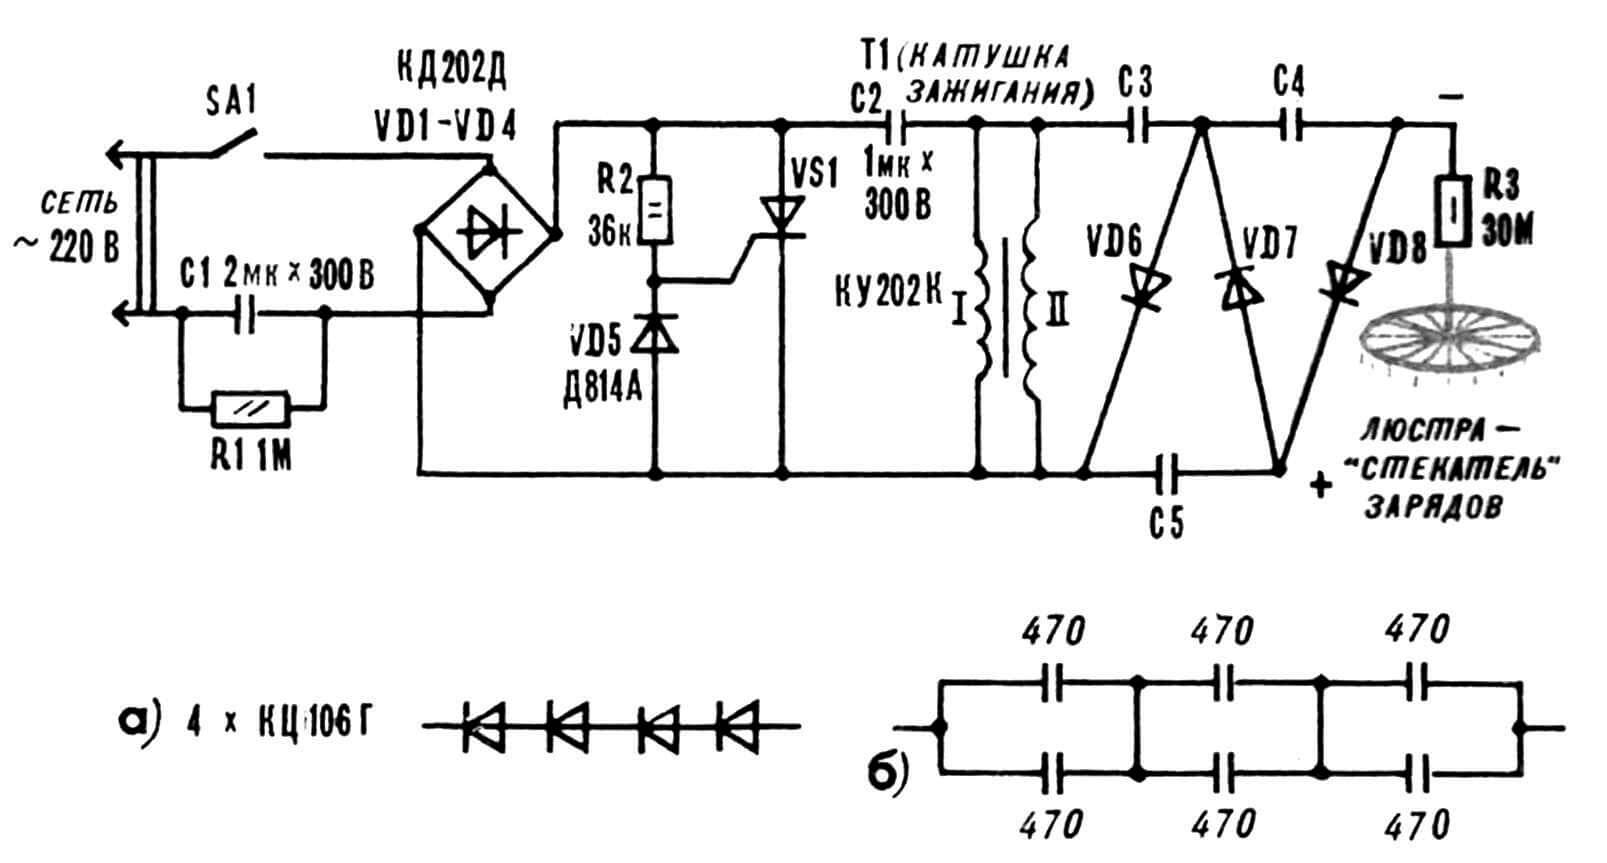 Принципиальная электрическая схема генератора отрицательных аэроионов и выполнение конструкционных сборок (а — каждого из диодов VD6...VD8, б — каждого из конденсаторов С3...С5) в цепях умножителя напряжения.